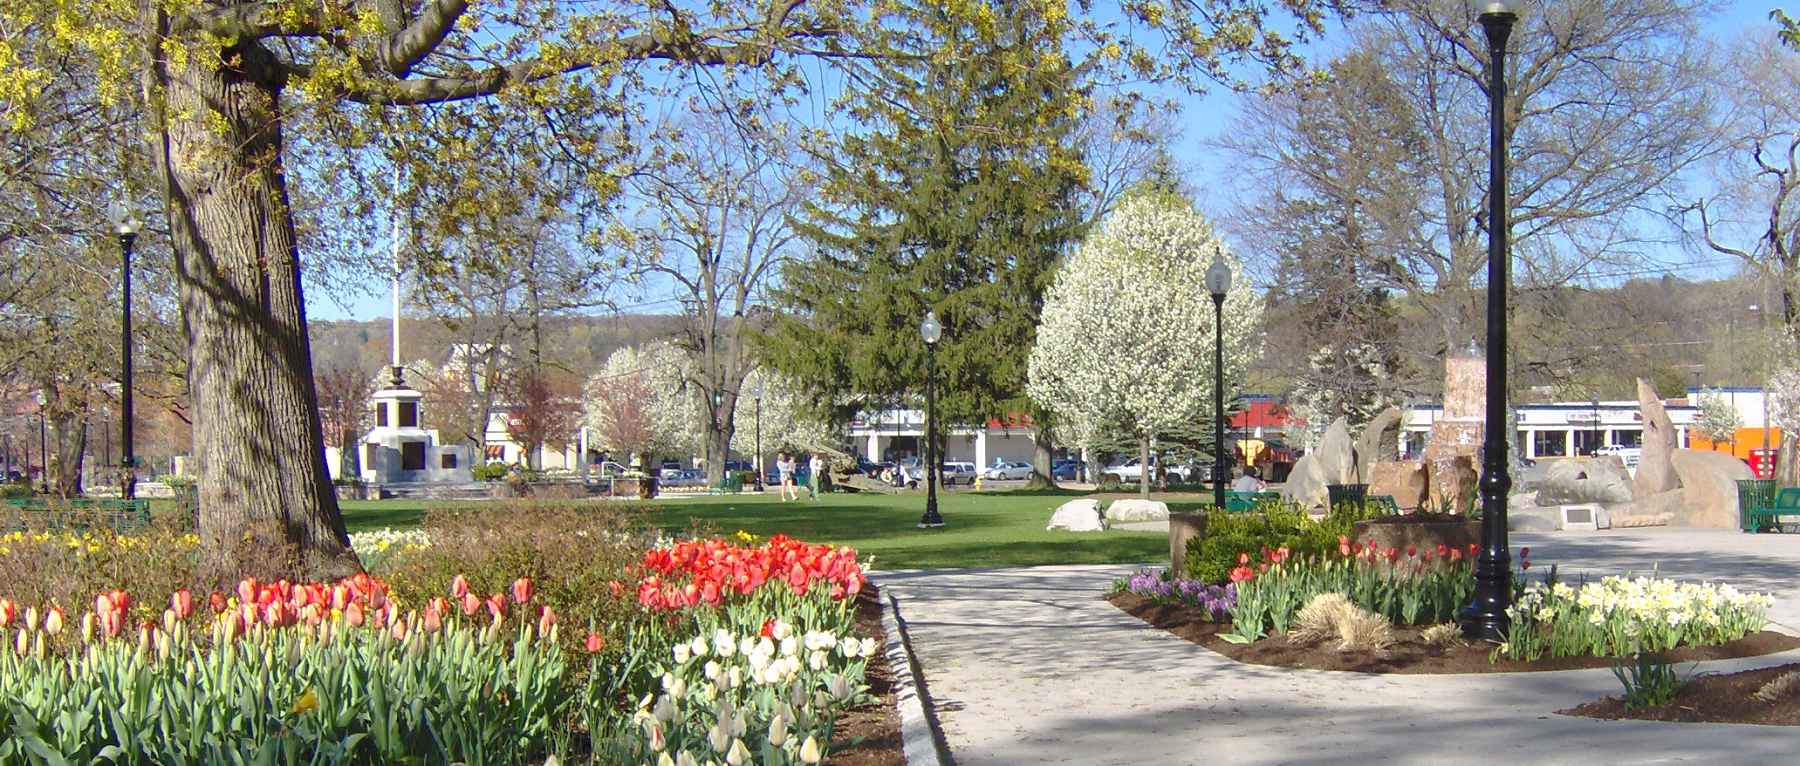 Spring at Coe Memorial Park in Torrington, CT